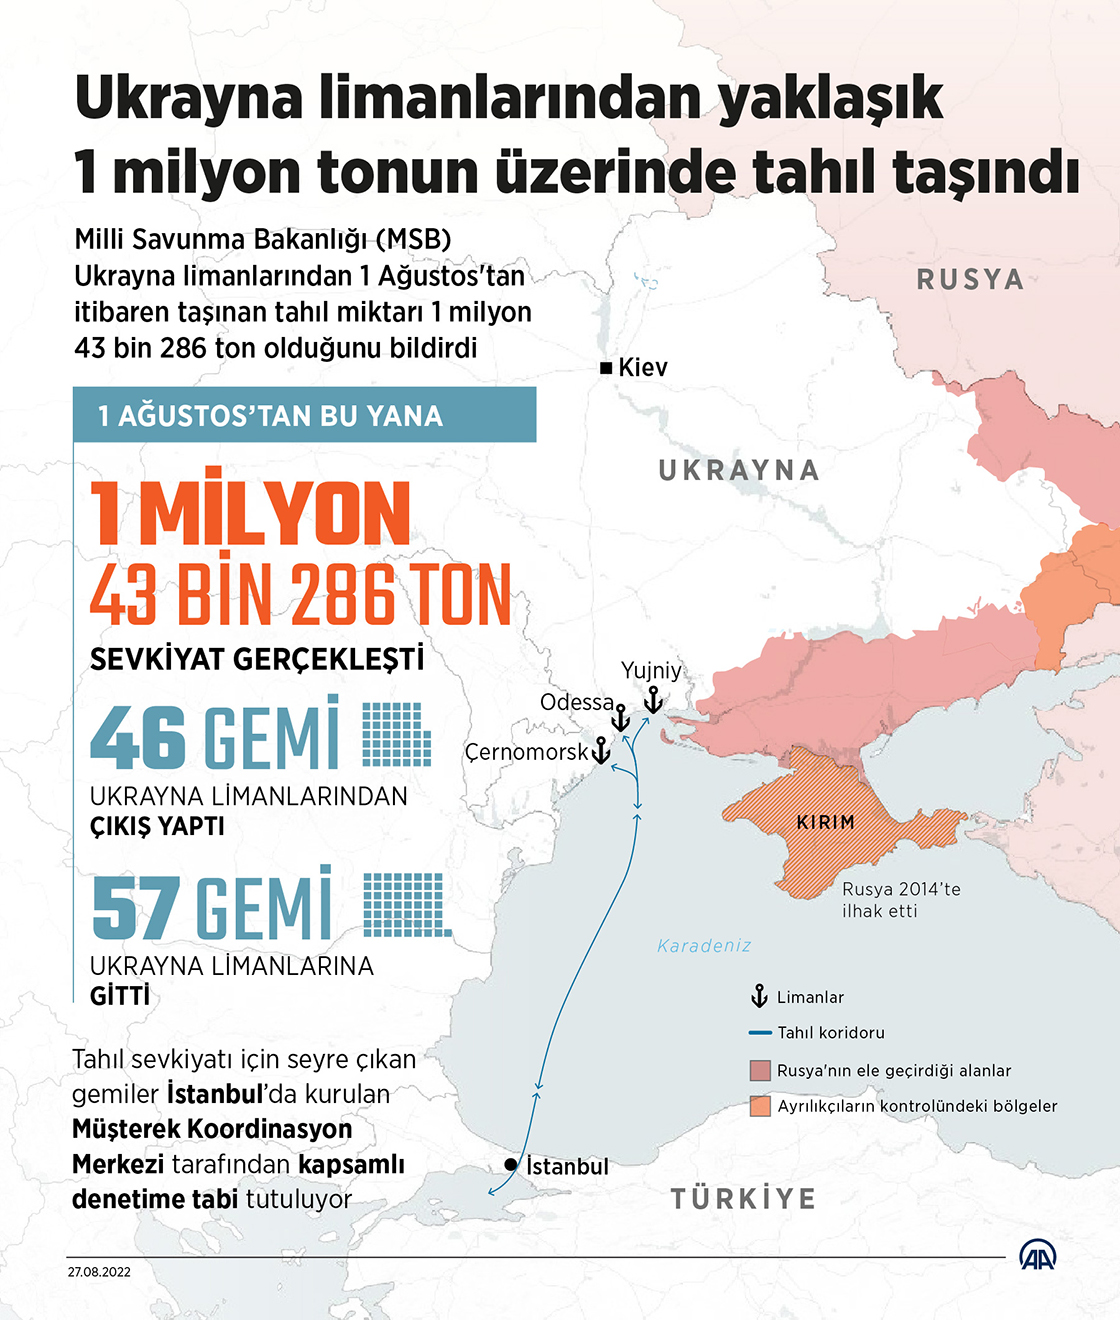 Ukrayna limanlarından yaklaşık 1 milyon tonun üzerinde tahıl taşındı